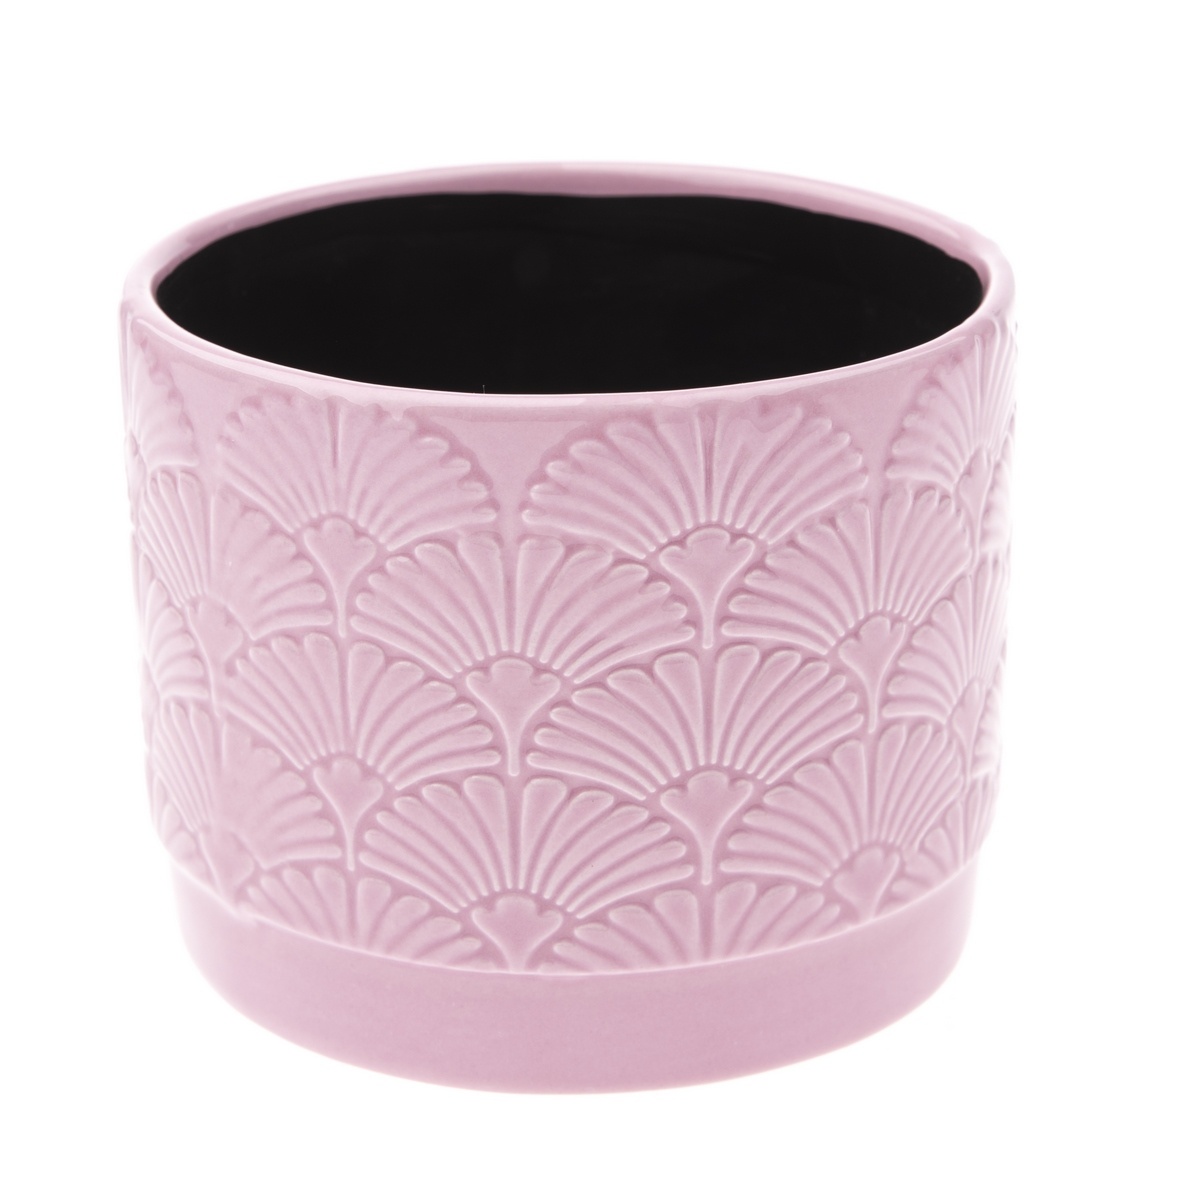 Poza Recipient ceramic ghiveci Shells, roz, 11,8x 9,8 x 9 cm